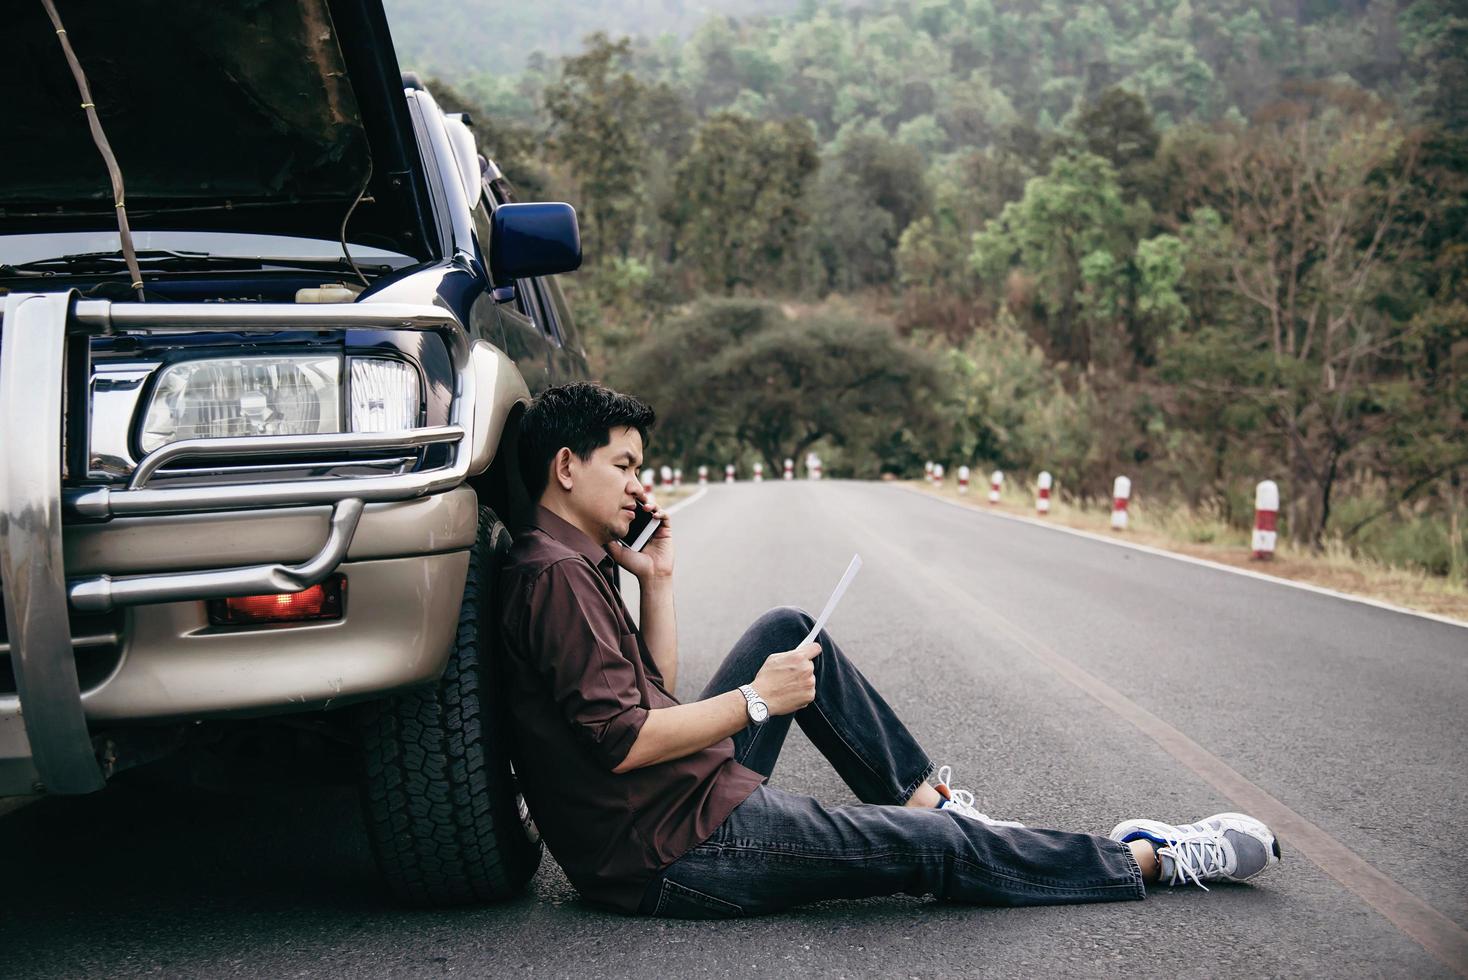 man försöker fixa ett bilmotorproblem på en lokal väg chiang mai thailand - människor med bilproblem transportkoncept foto